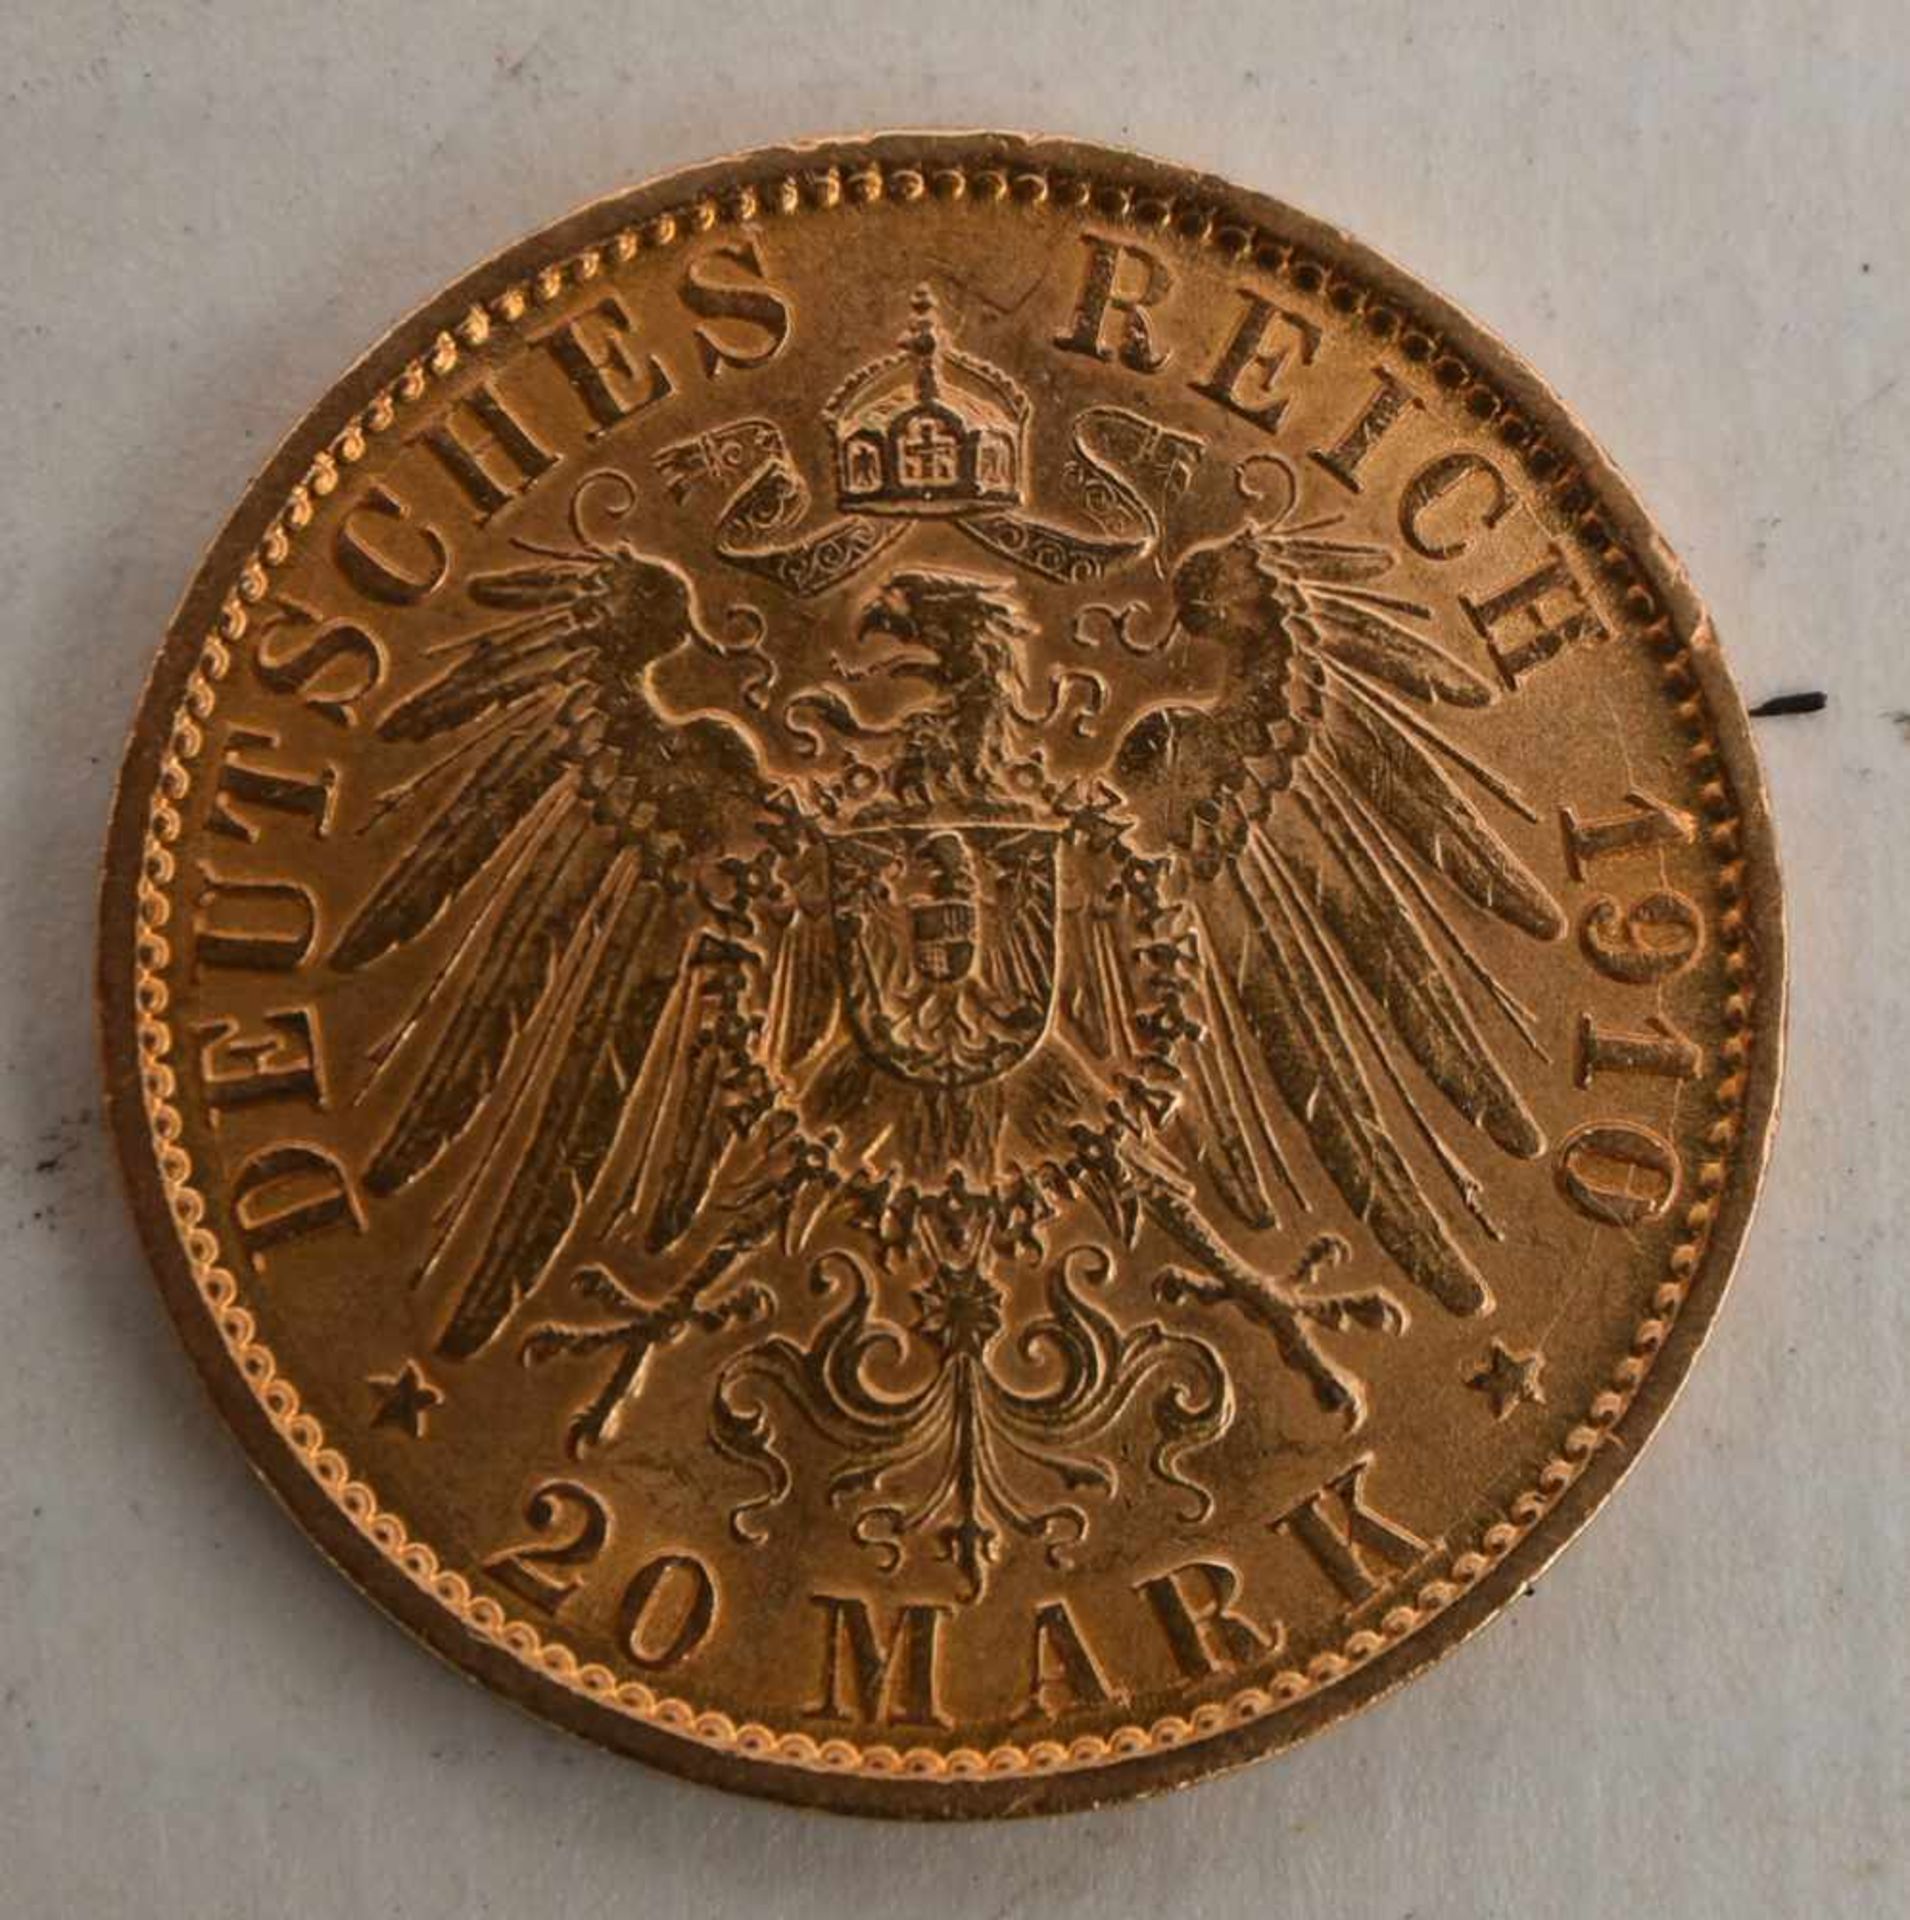 GOLDMÜNZEN KONVOLUT, 3 mal 20 Mark Deutsches Reich, 19/20. Jhd. (7) Gesamtgewicht 23,9 gramm, - Bild 3 aus 6